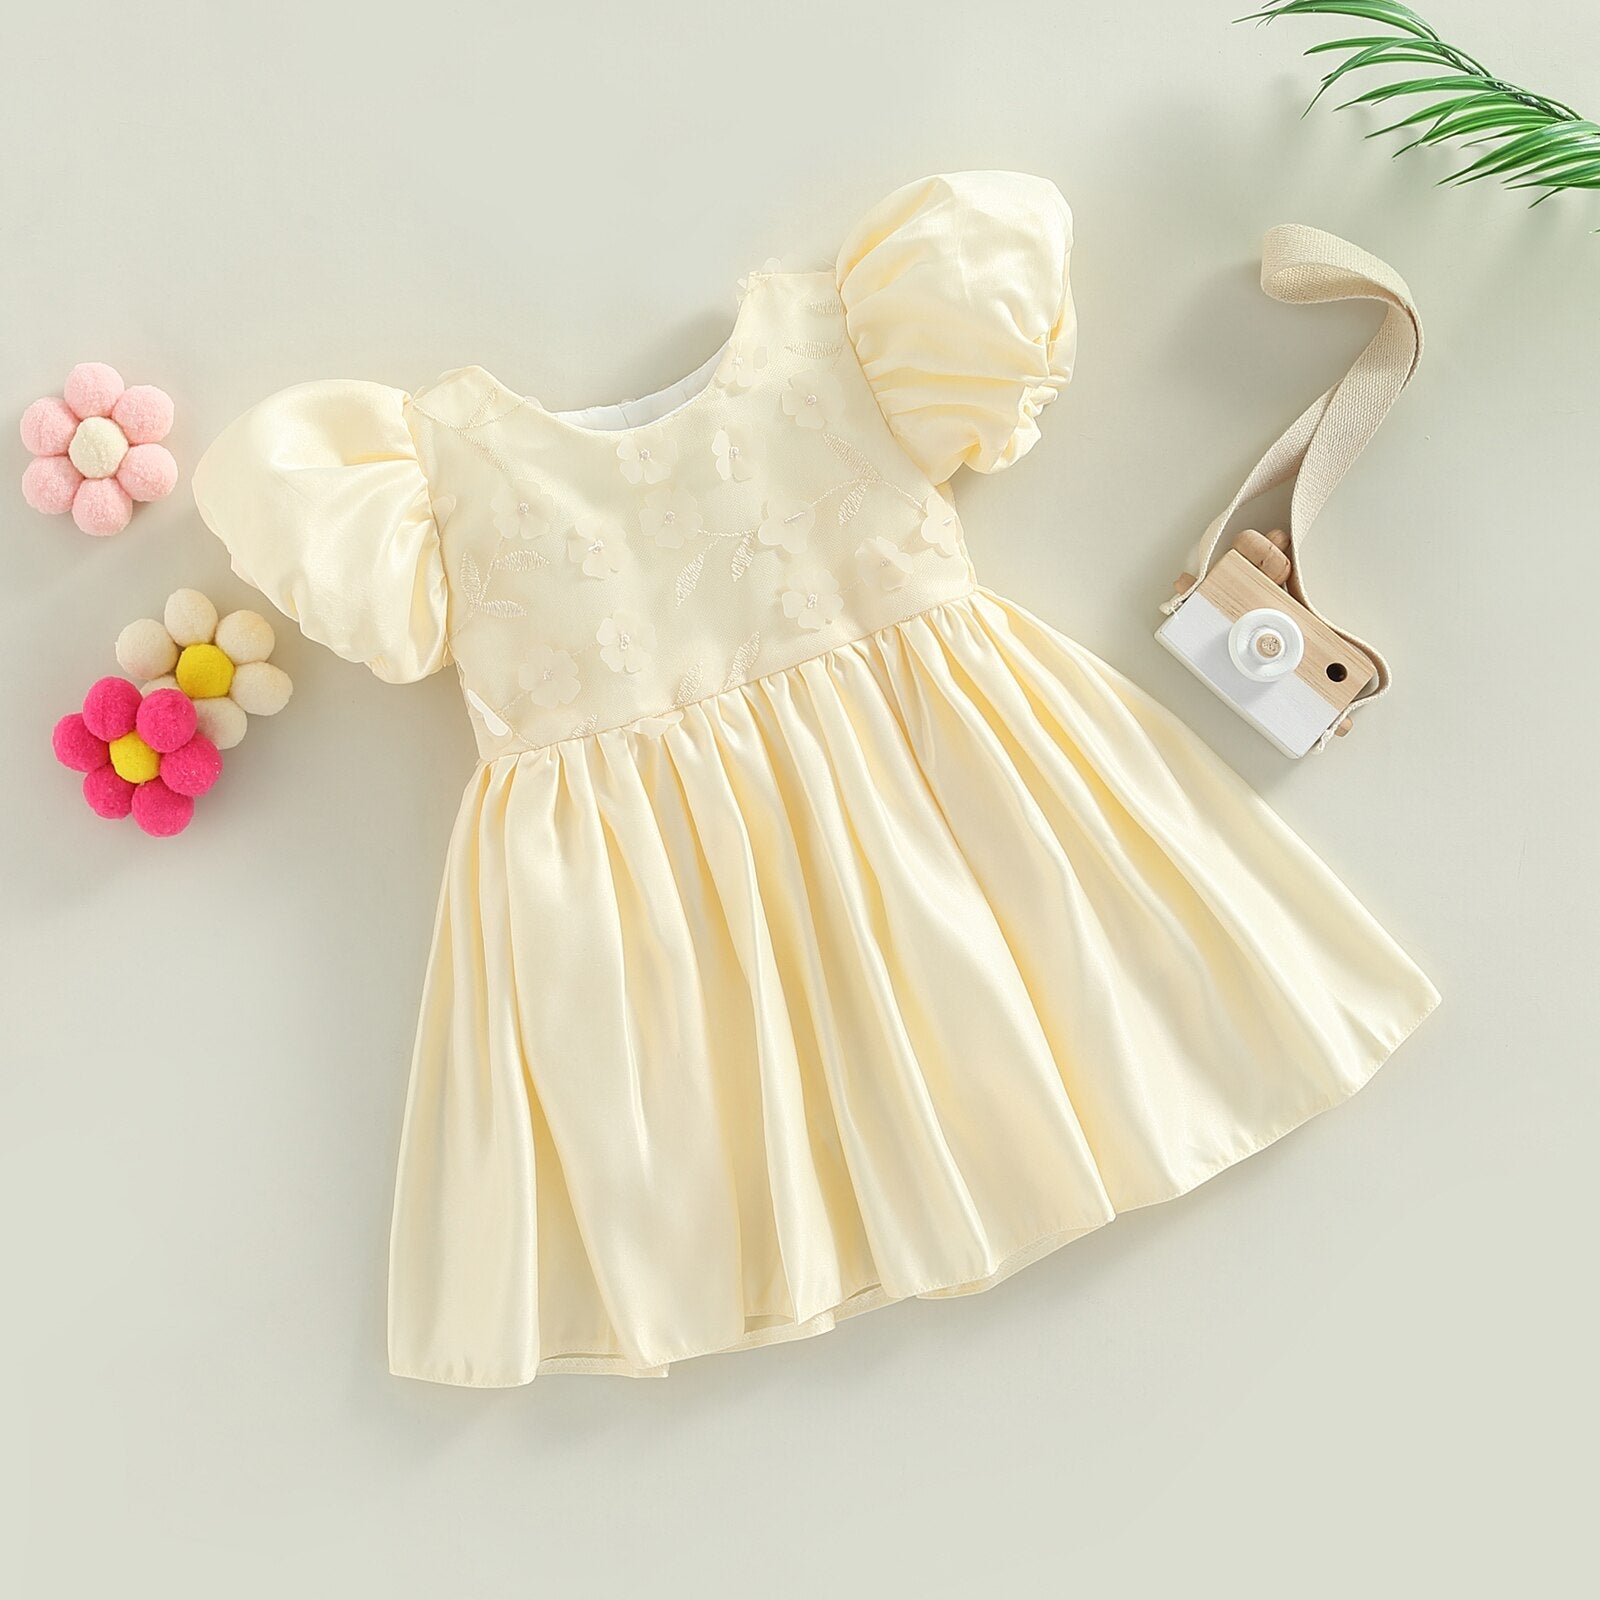 Vestido Infantil Princesa vestido Loja Click Certo Champagne 2-3 anos 57cm 